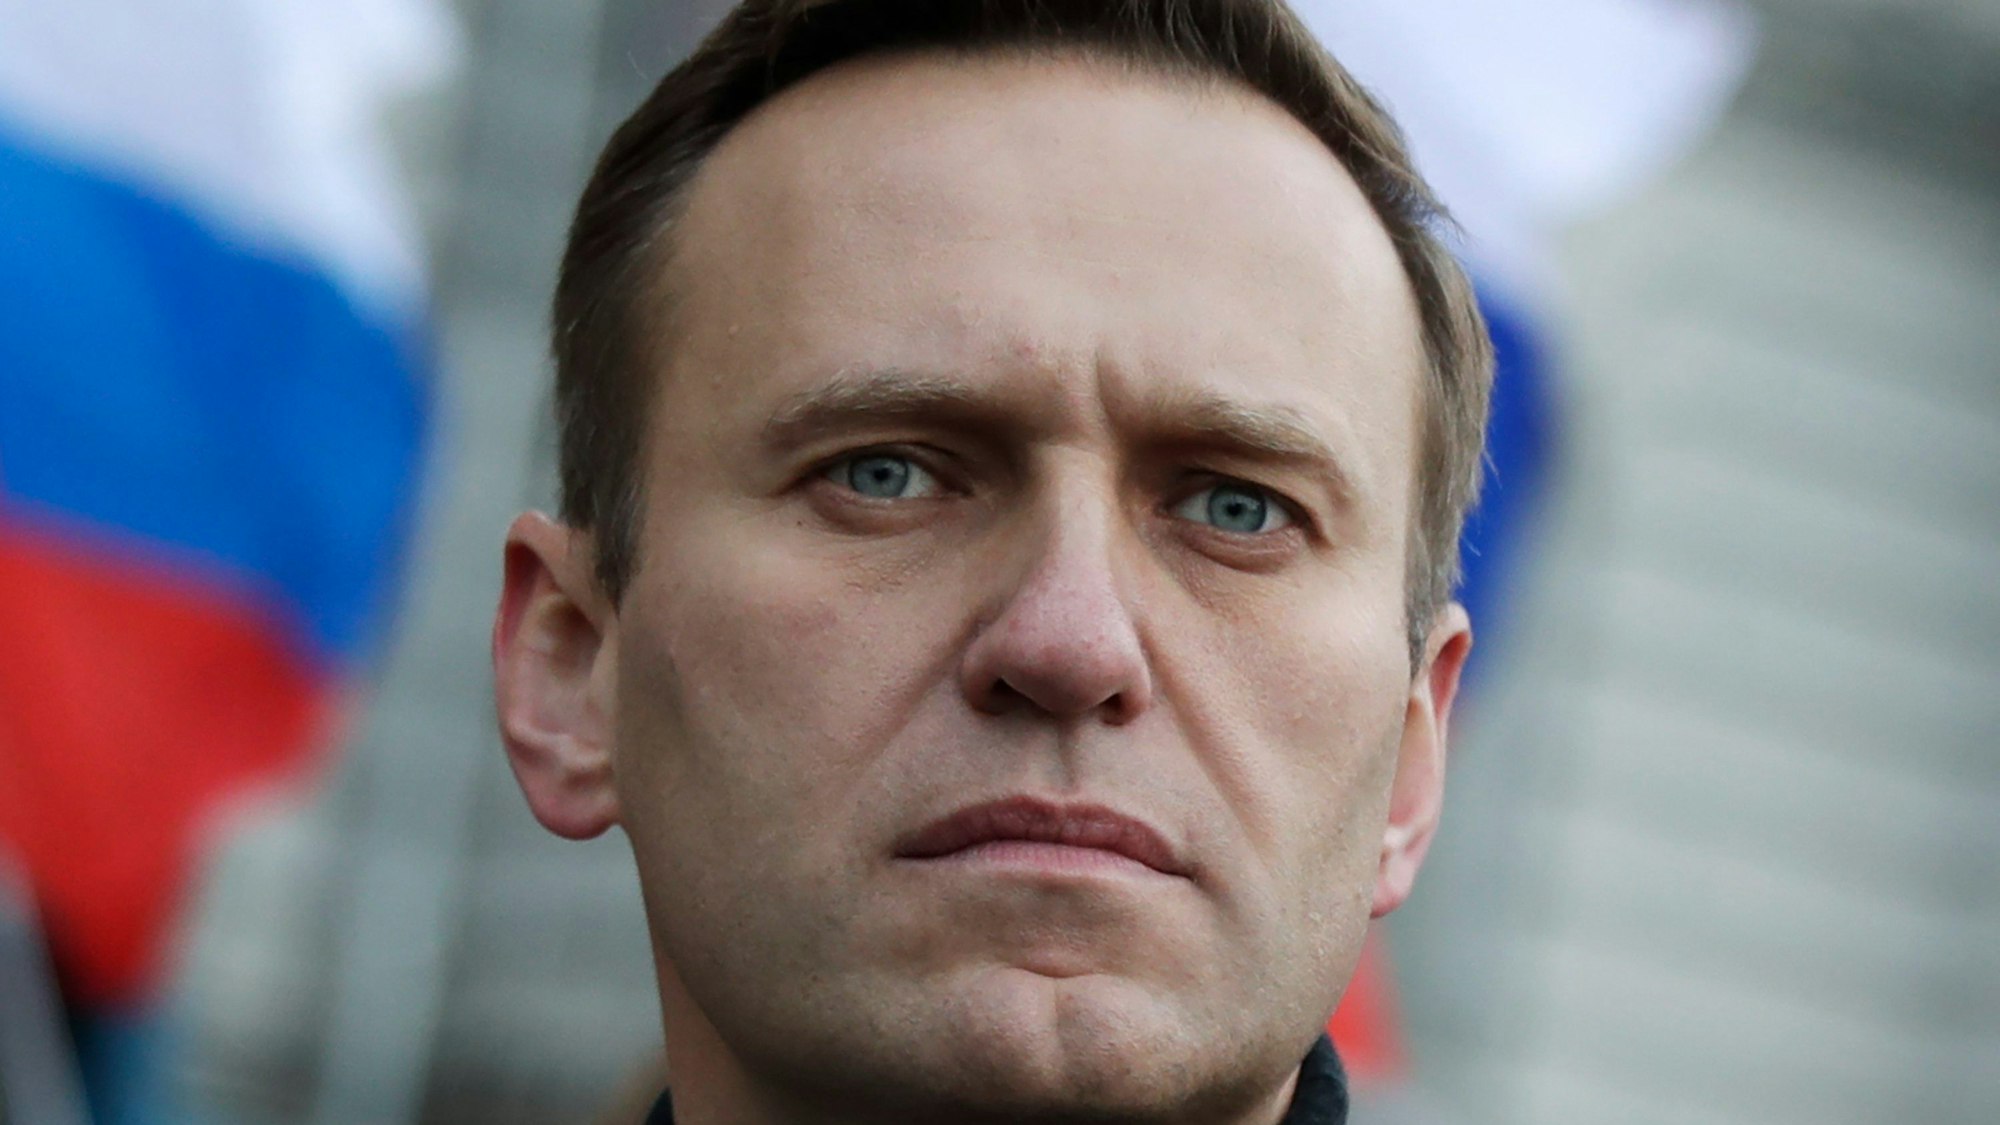 Der am 16. Februar in einem russischen Straflager gestorbene Oppositionsführer Alexej Nawalny hat offenbar zur Wahl einen Aufruf an die Russen verfasst. Dieser wurde nun von seinem Team veröffentlicht. (Archivbild)